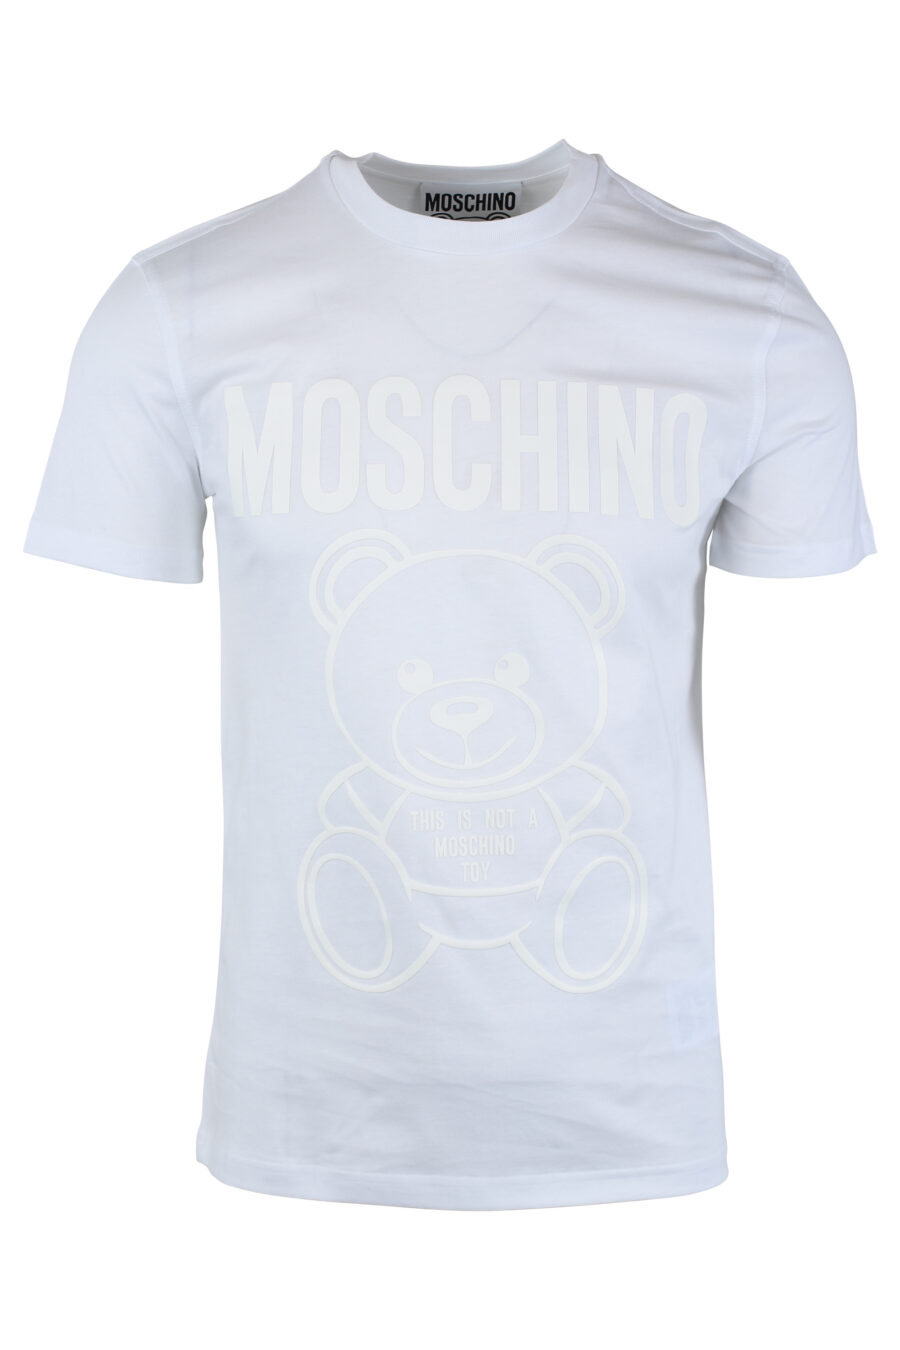 Weißes T-Shirt mit einfarbigem Bären-Maxilogo - IMG 1657